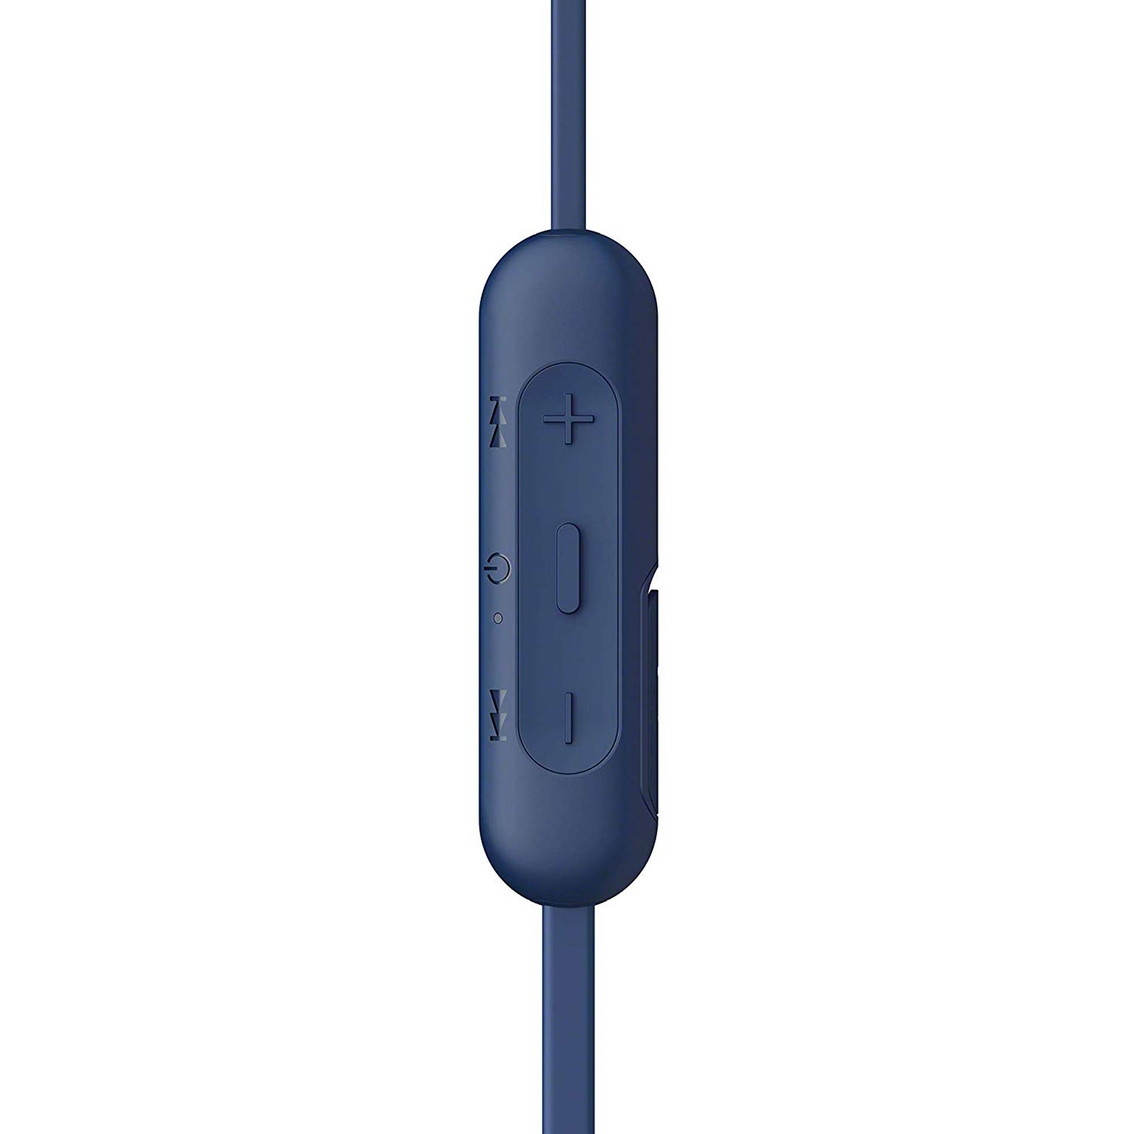 Sony WI-C310 Wireless In Ear Headphones - Image 4 of 6